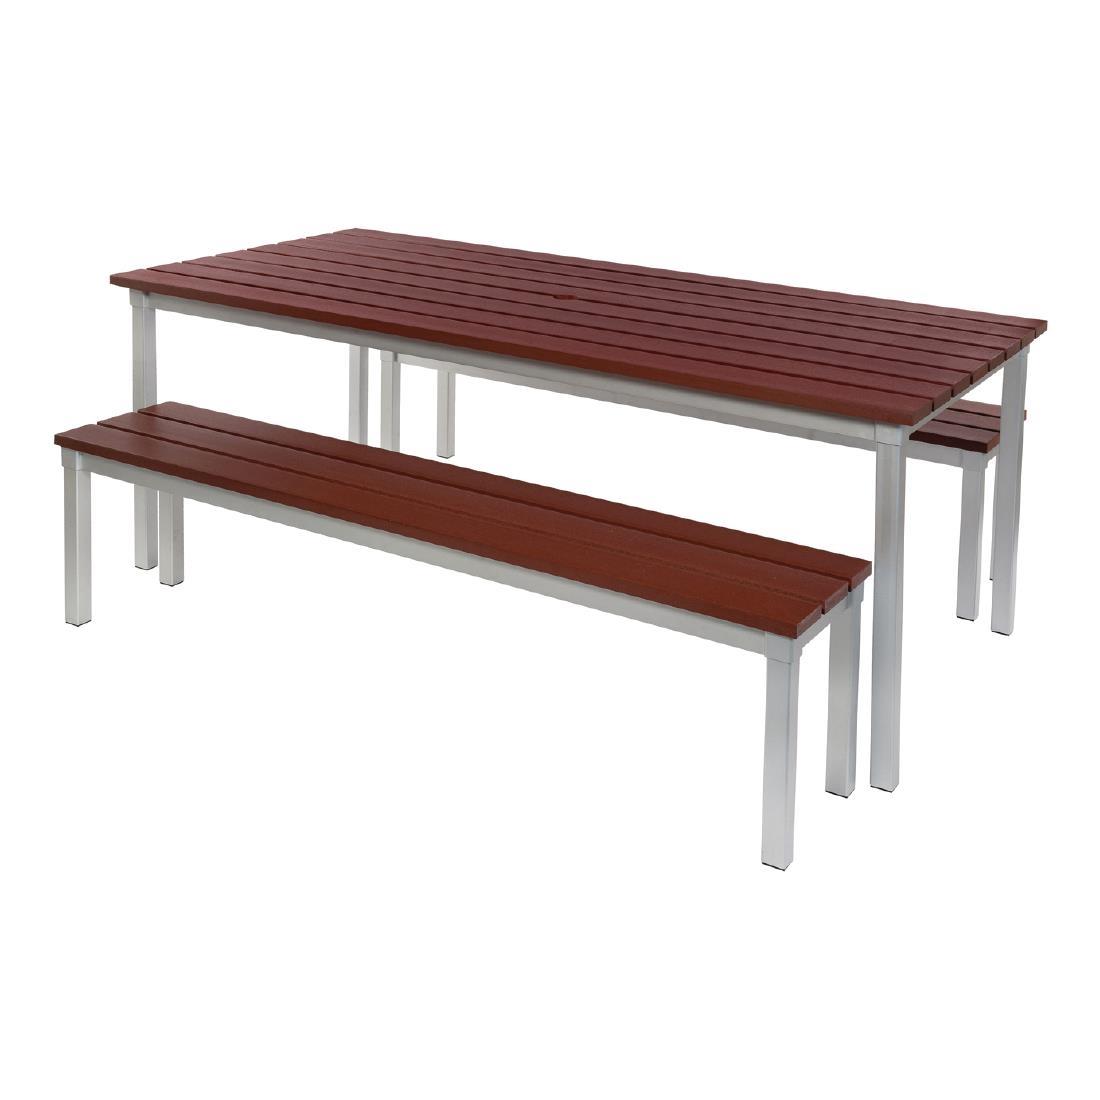 Enviro Outdoor Walnut Effect Faux Wood Table 1800mm - CK810  - 2